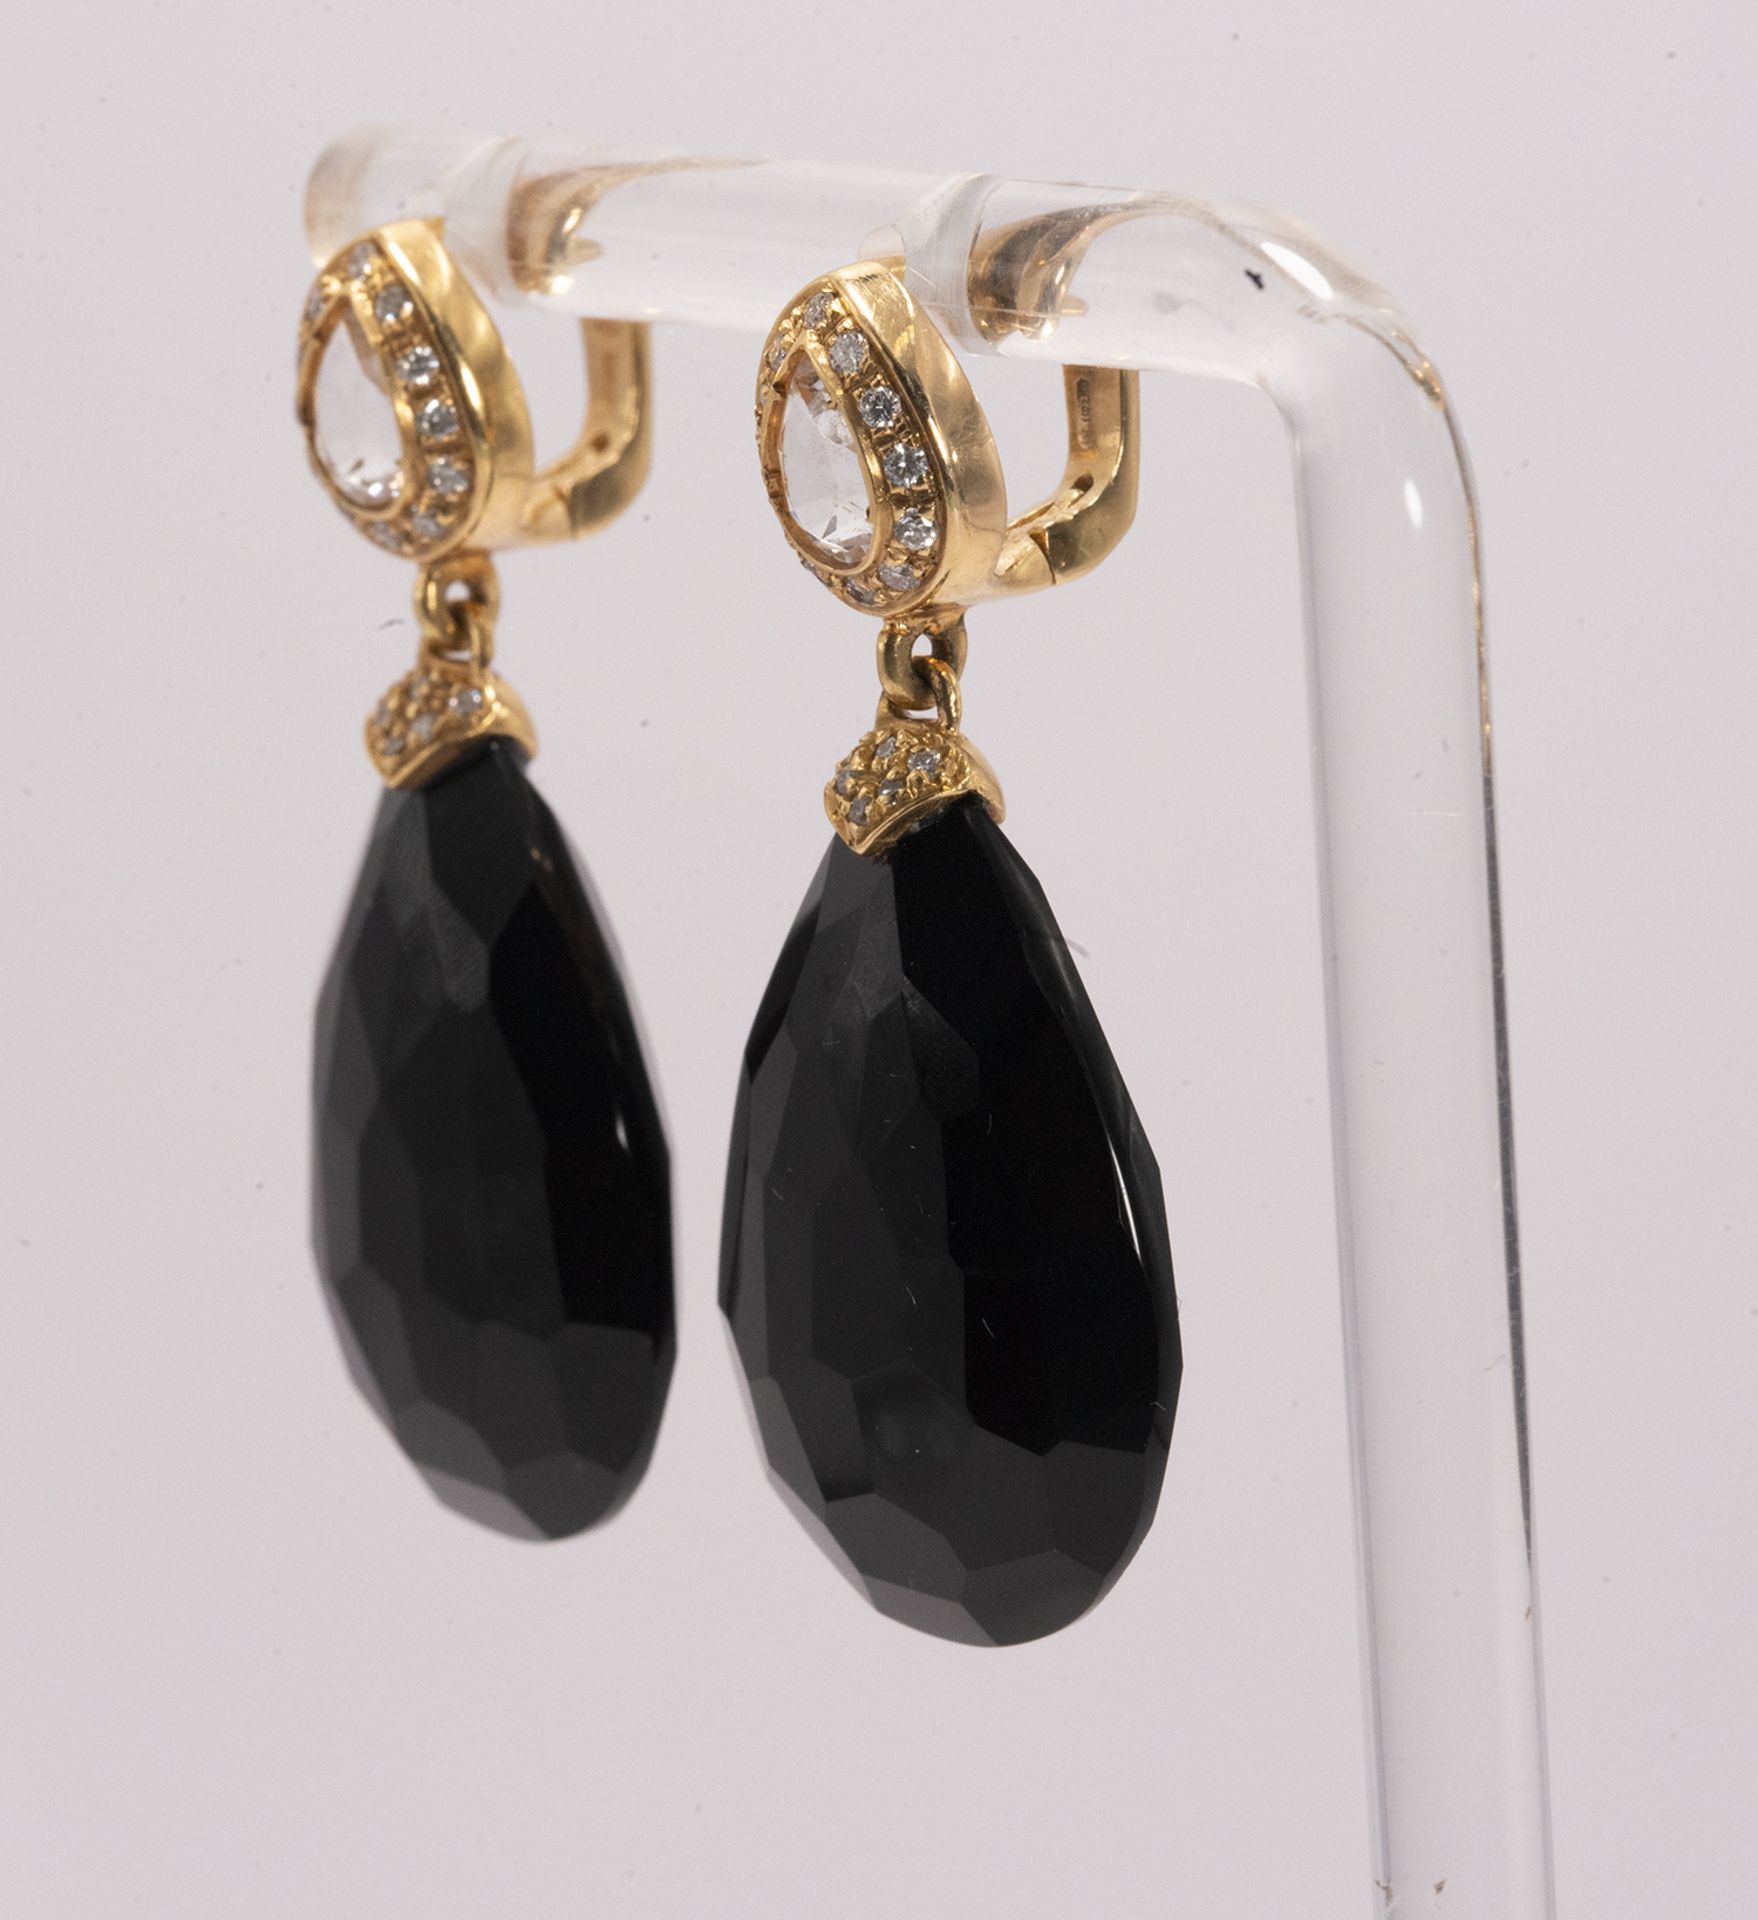 Elegance Black Earrings - Image 2 of 5